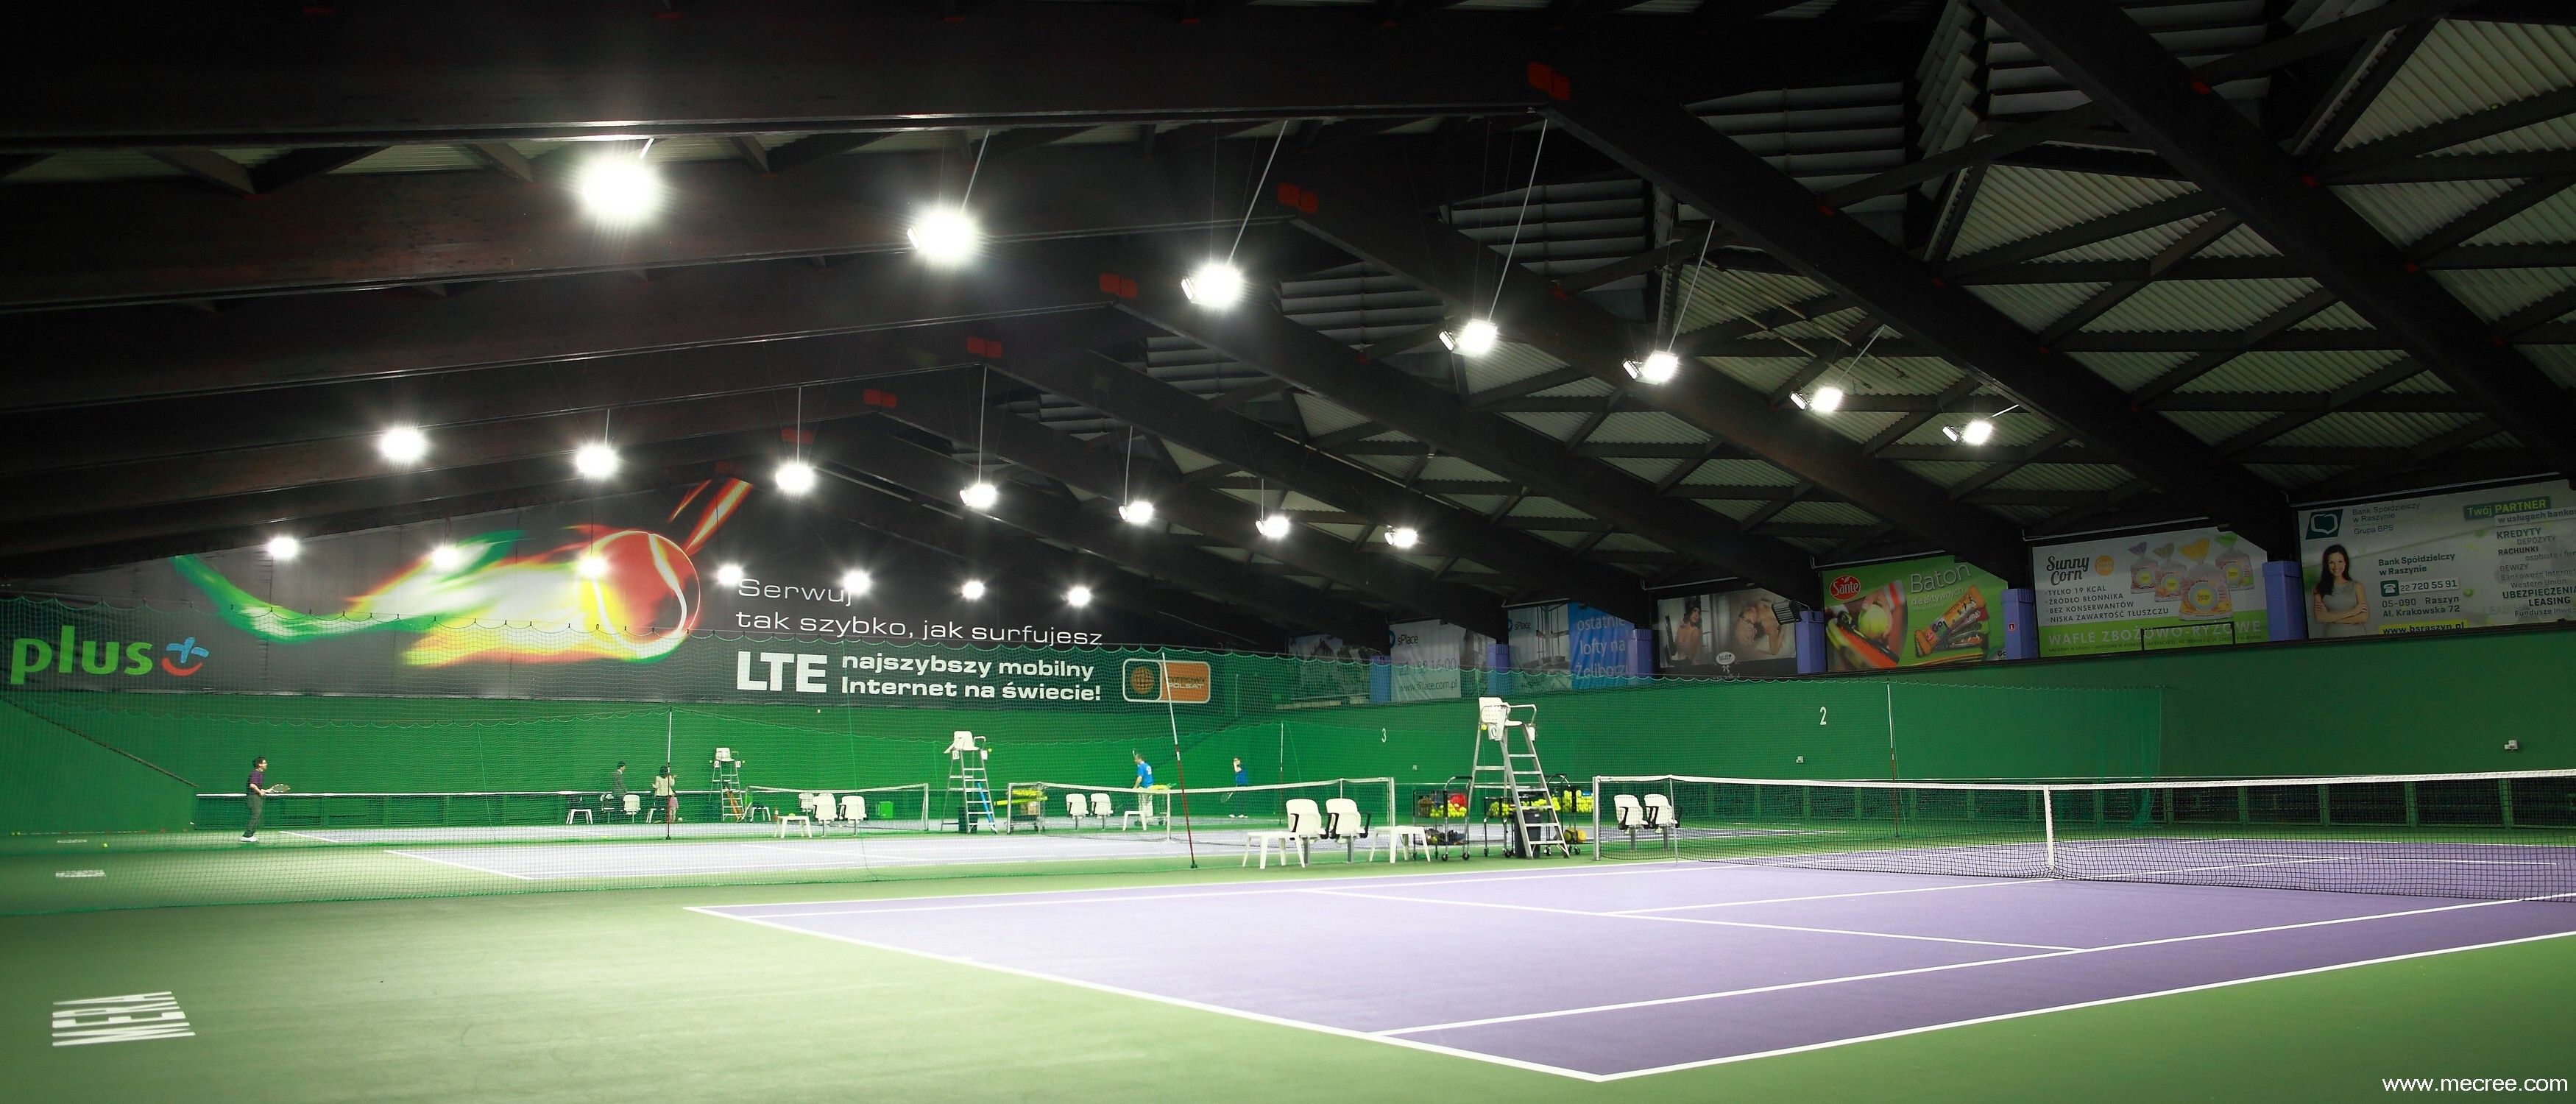 Indoor Tennis Courts Lighting Case Studies